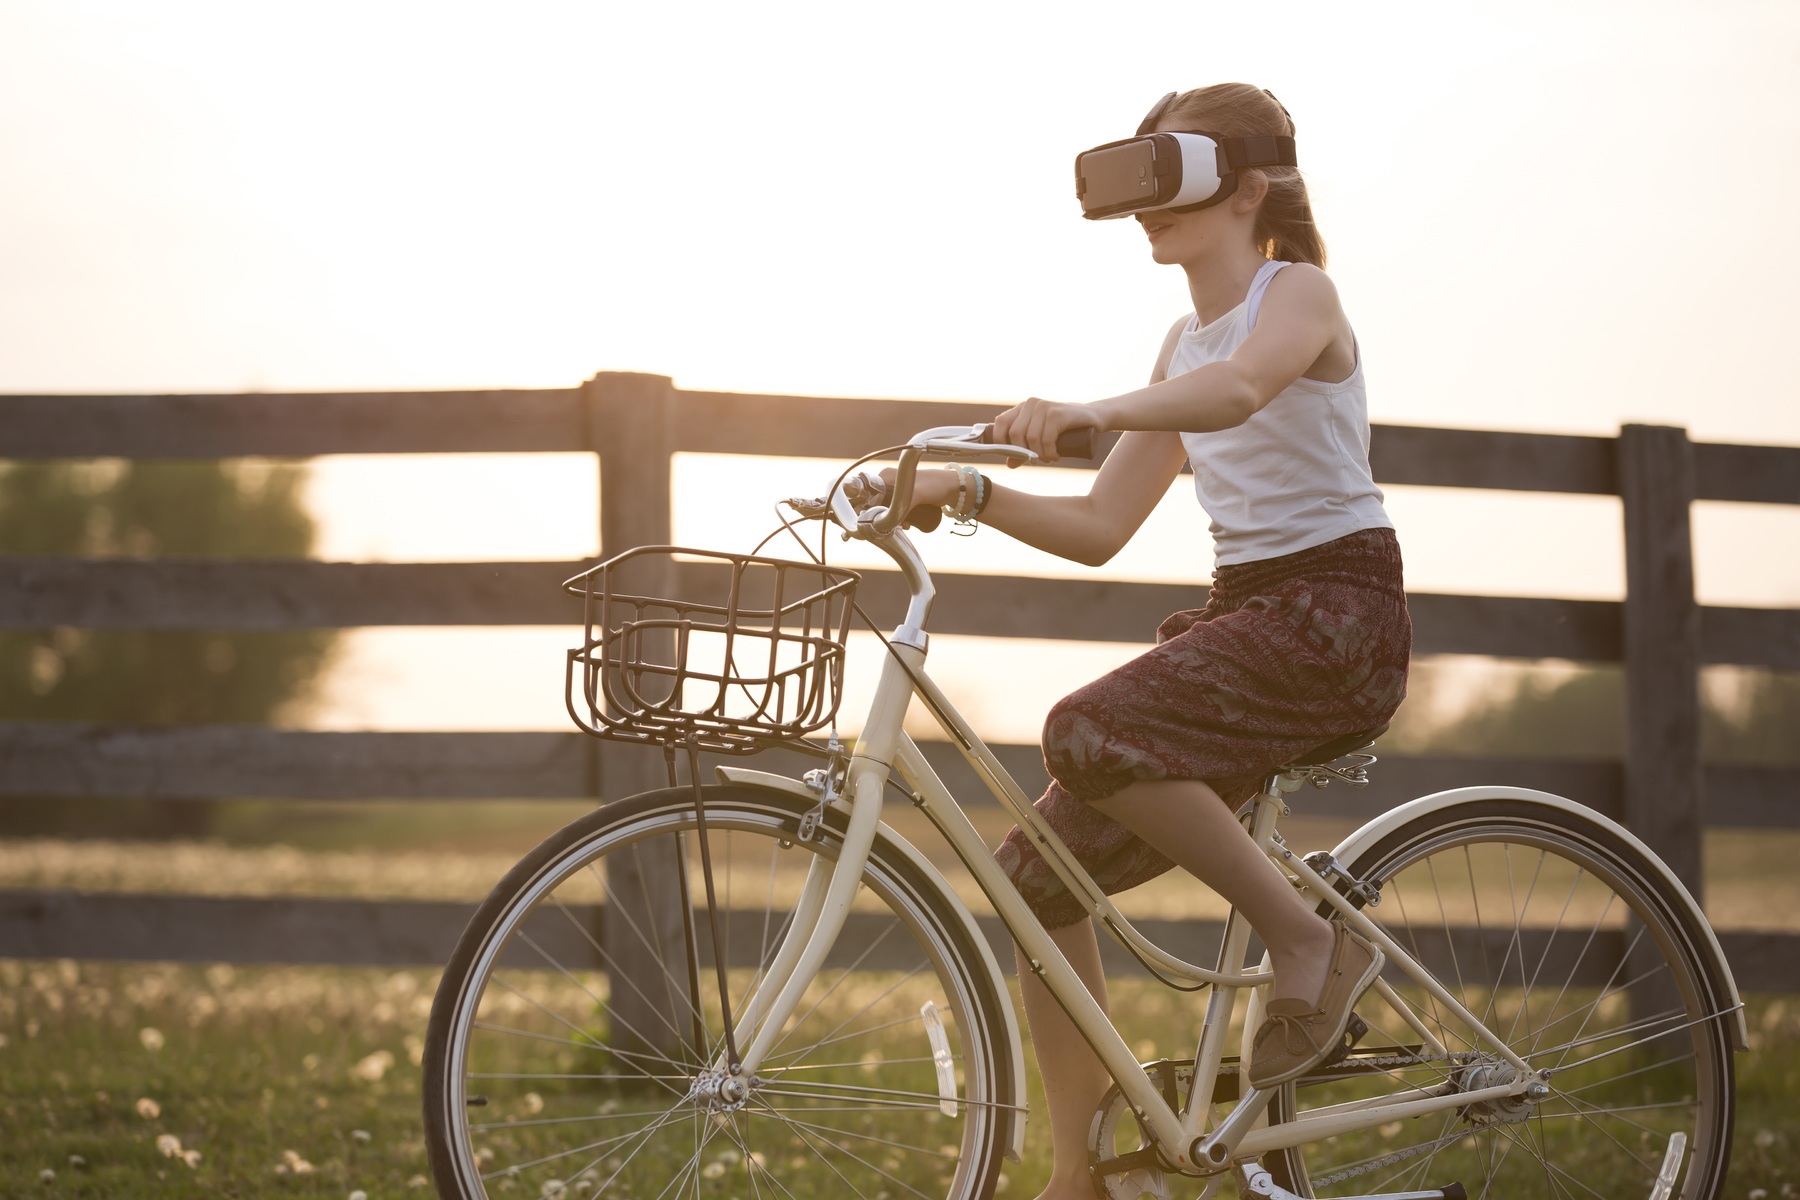 Lire la suite à propos de l’article Réalité virtuelle et réalité augmentée